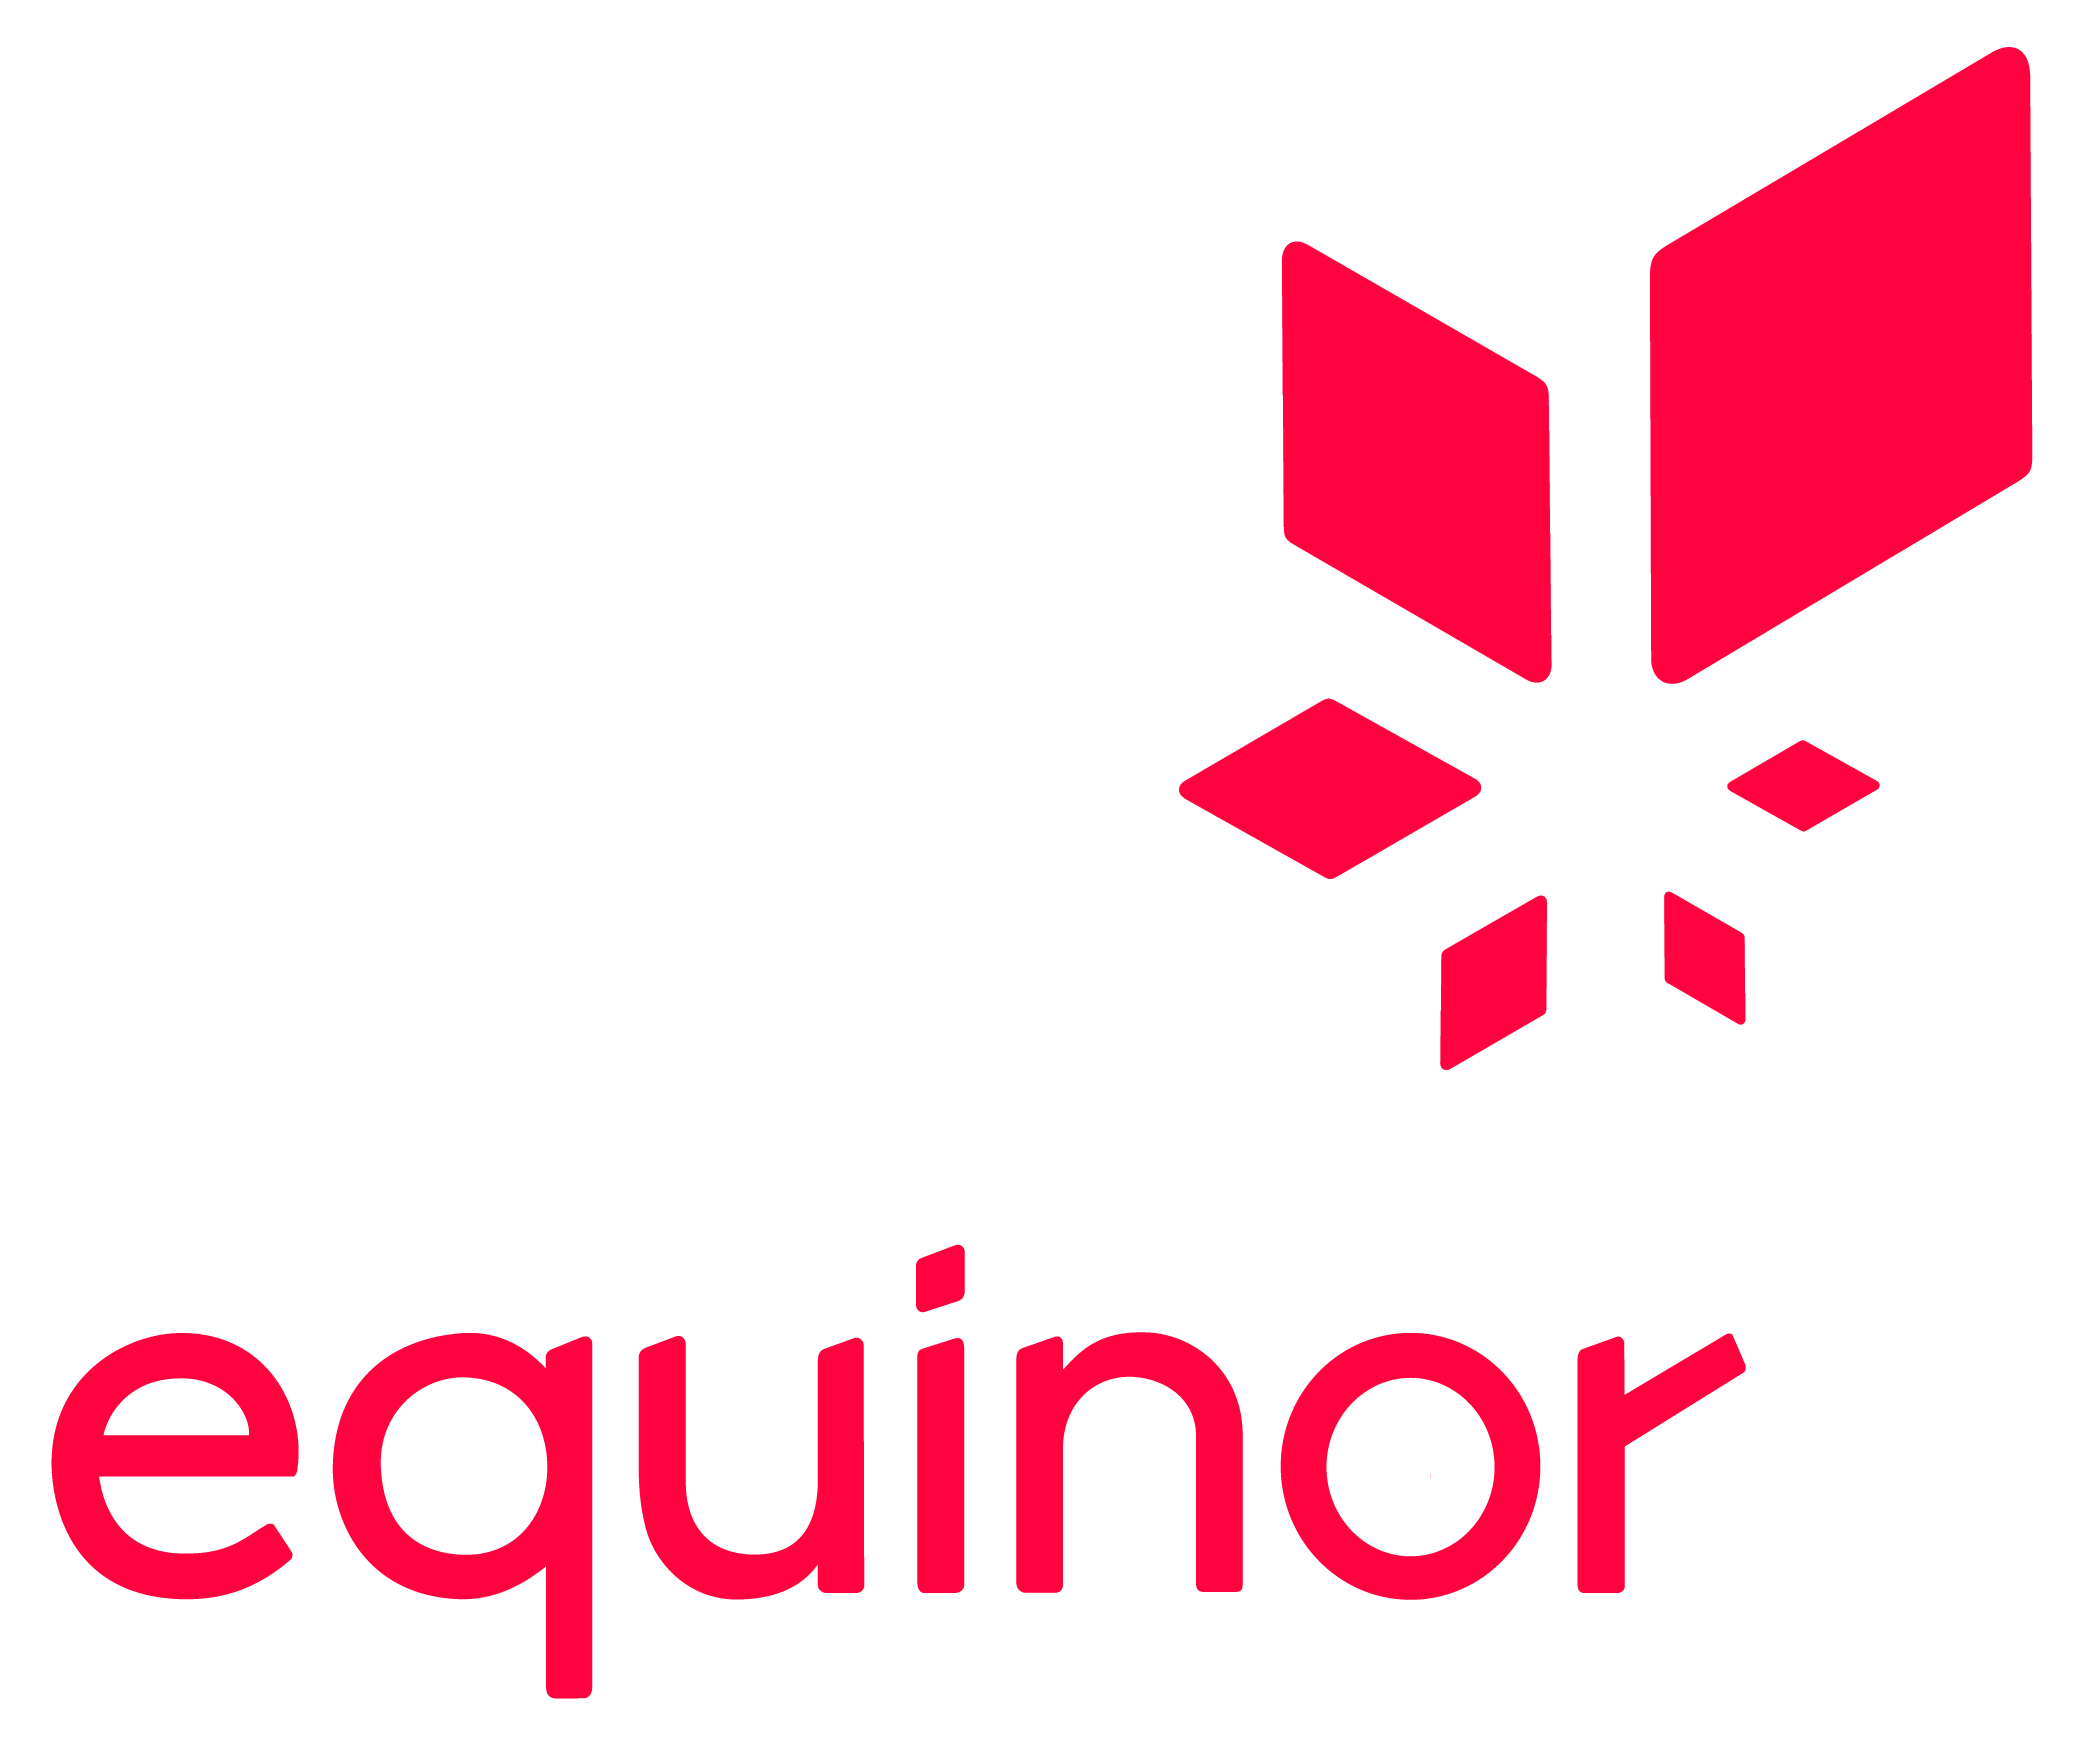 Link to Equinor's website